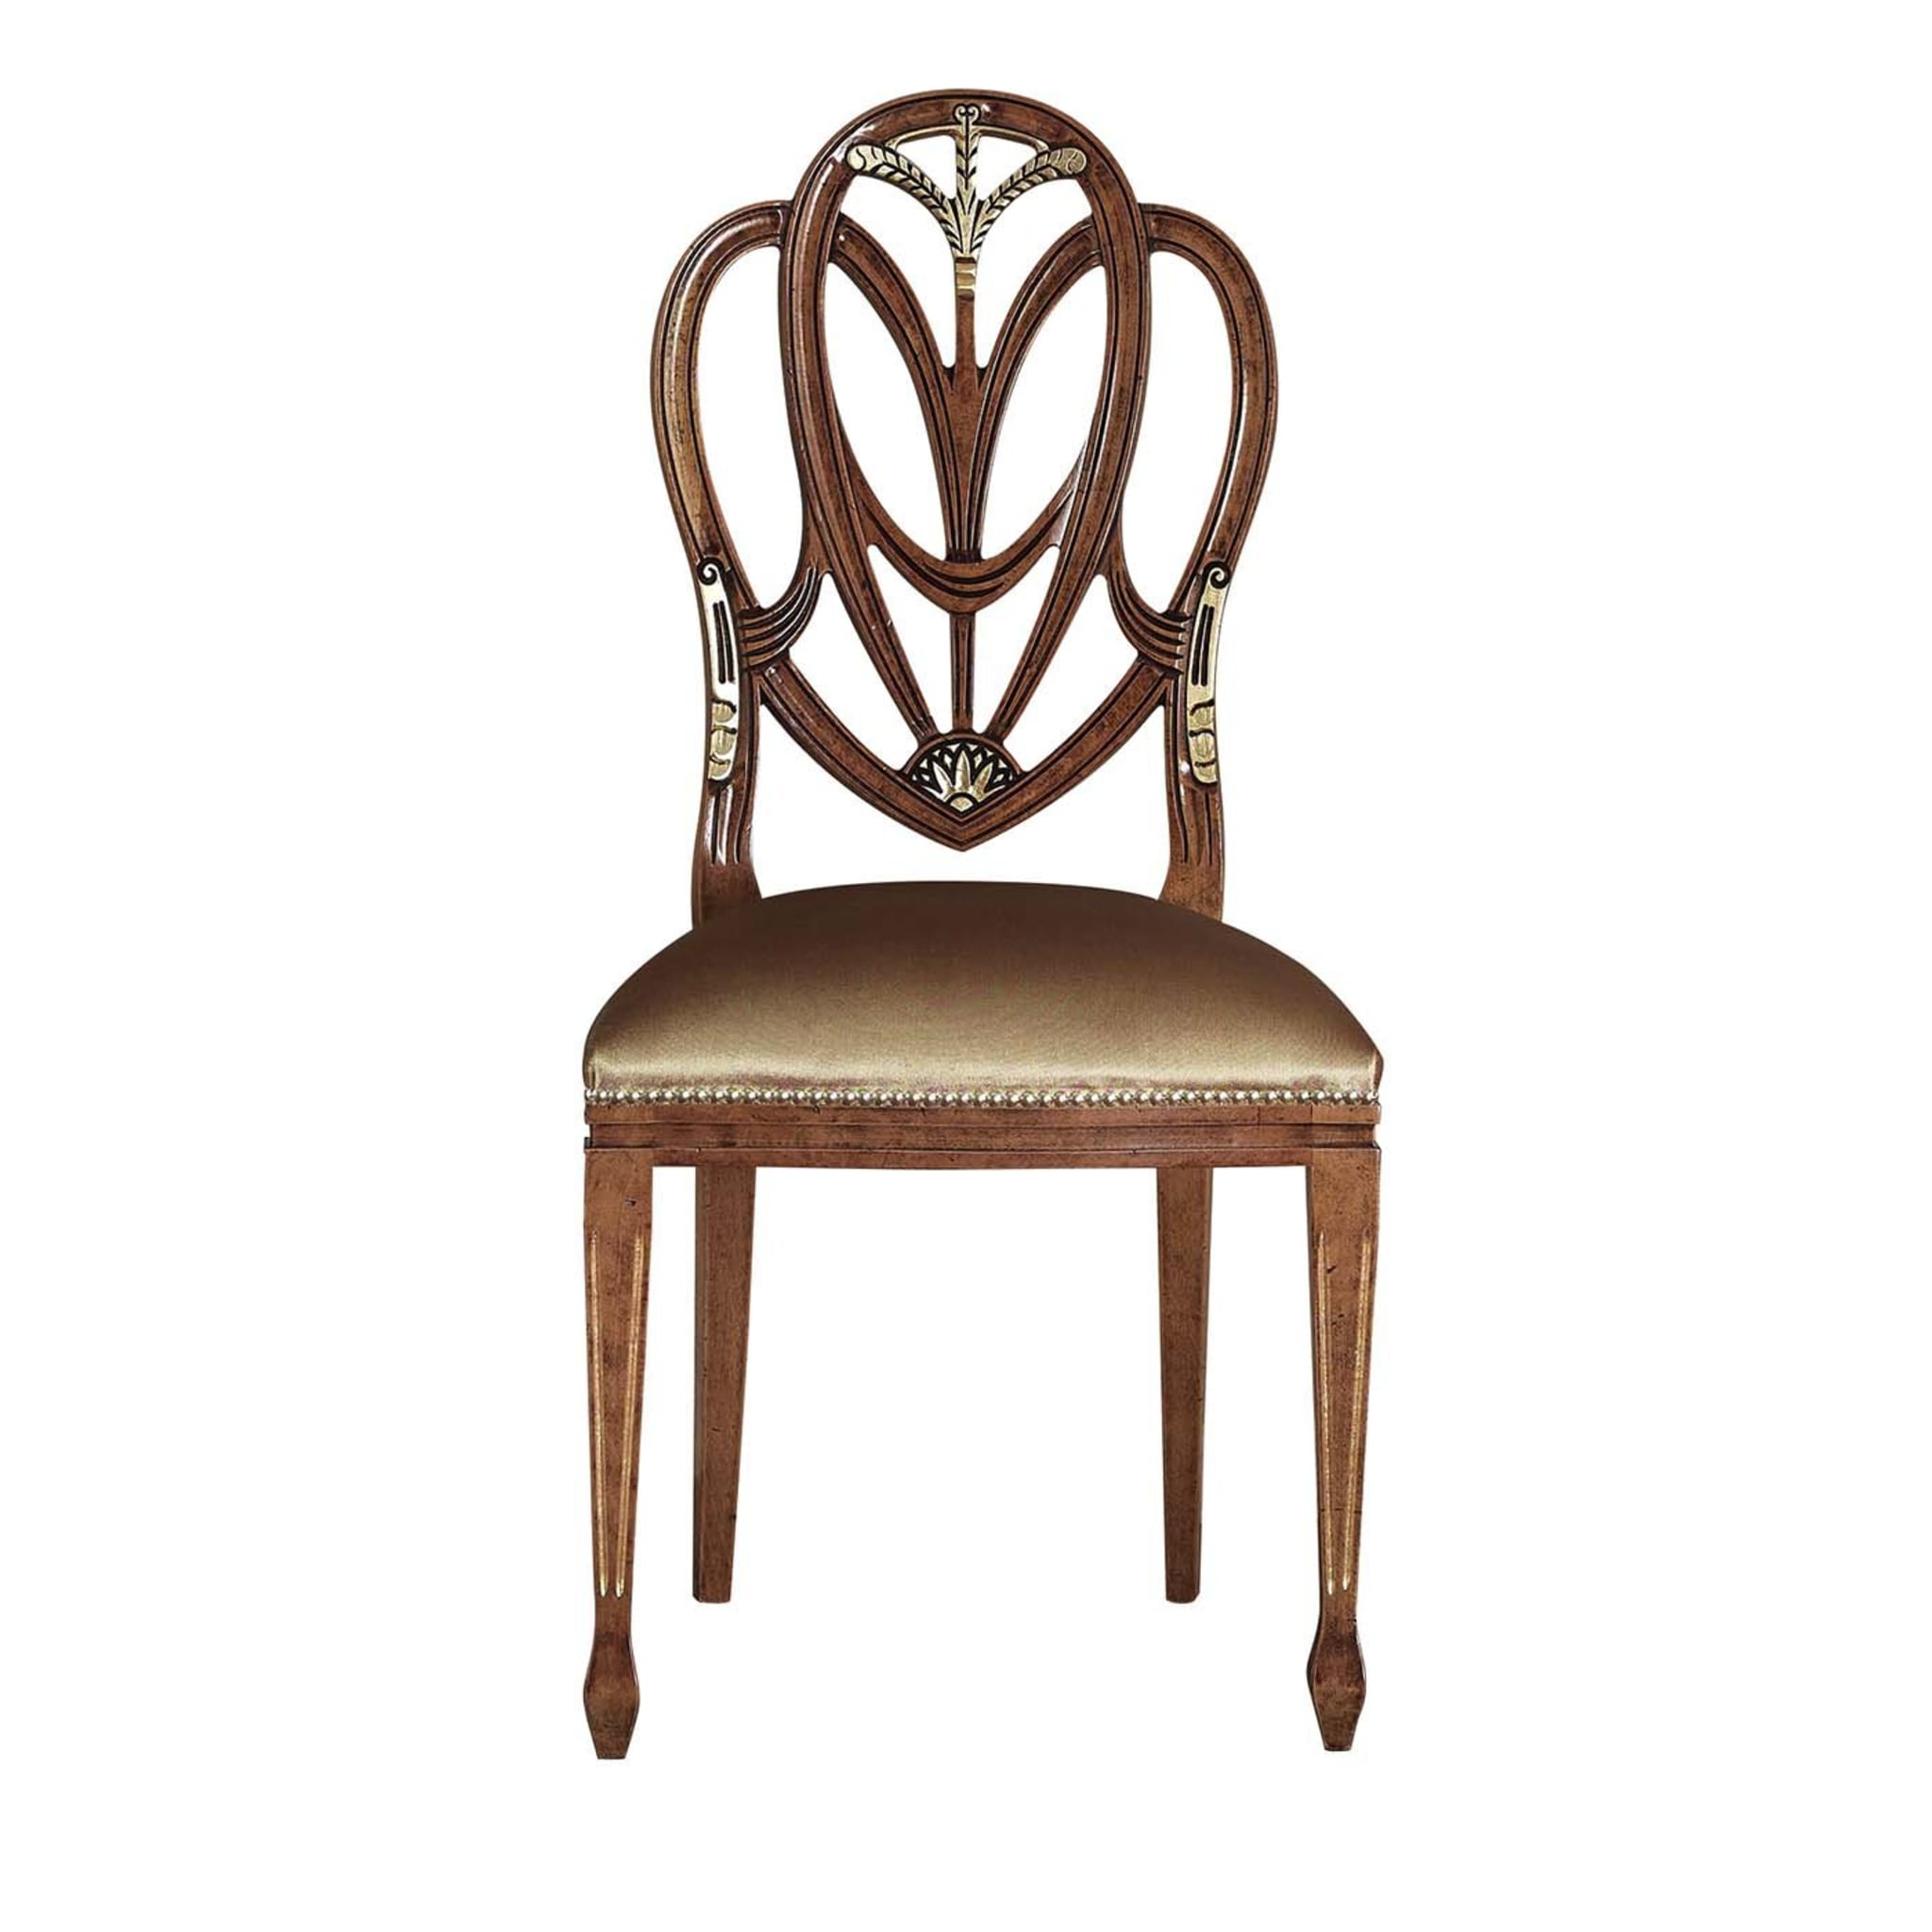 Giorgio III Chair - Main view